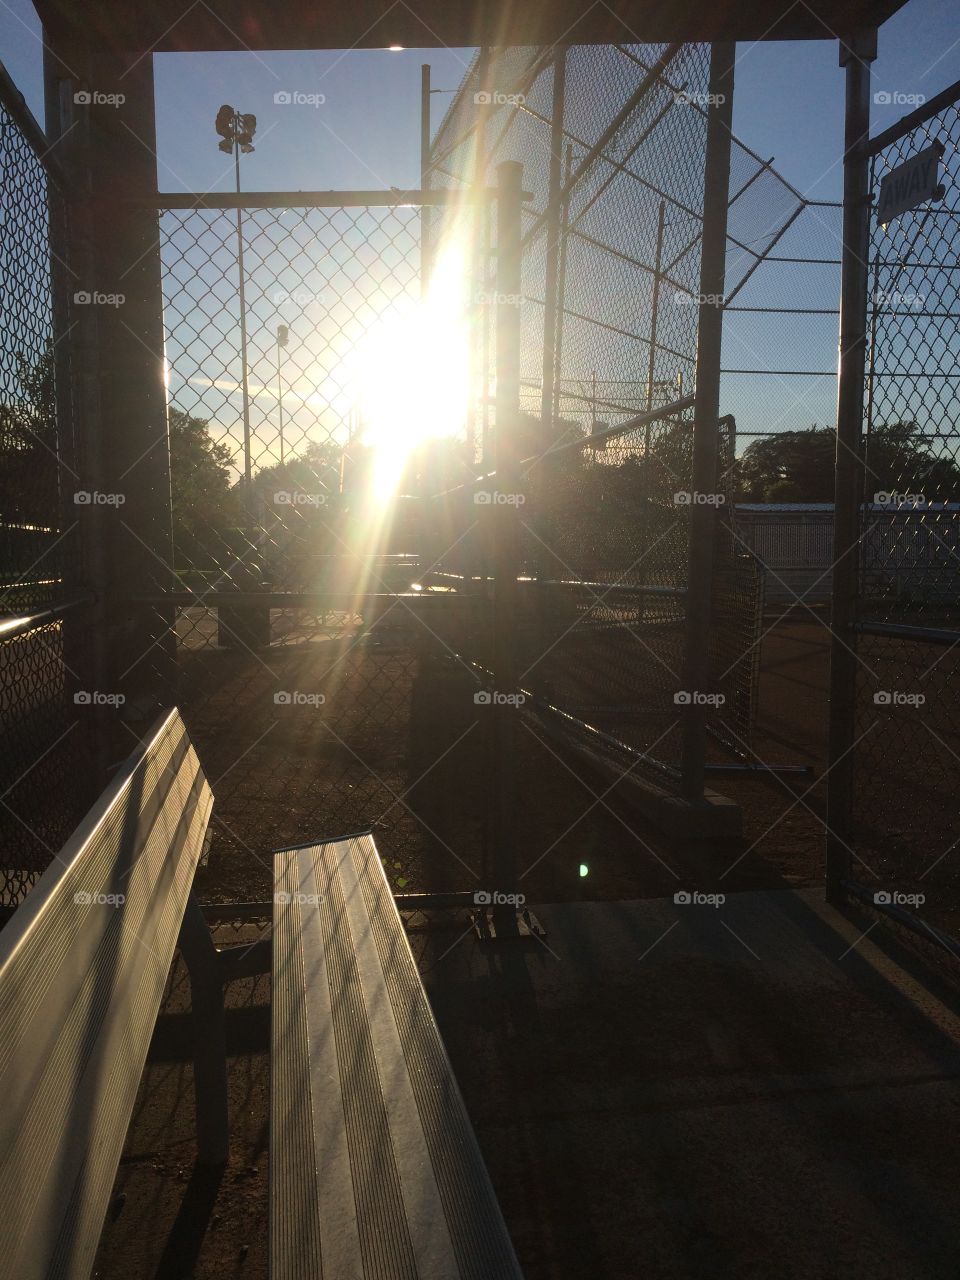 Ballpark sunset 